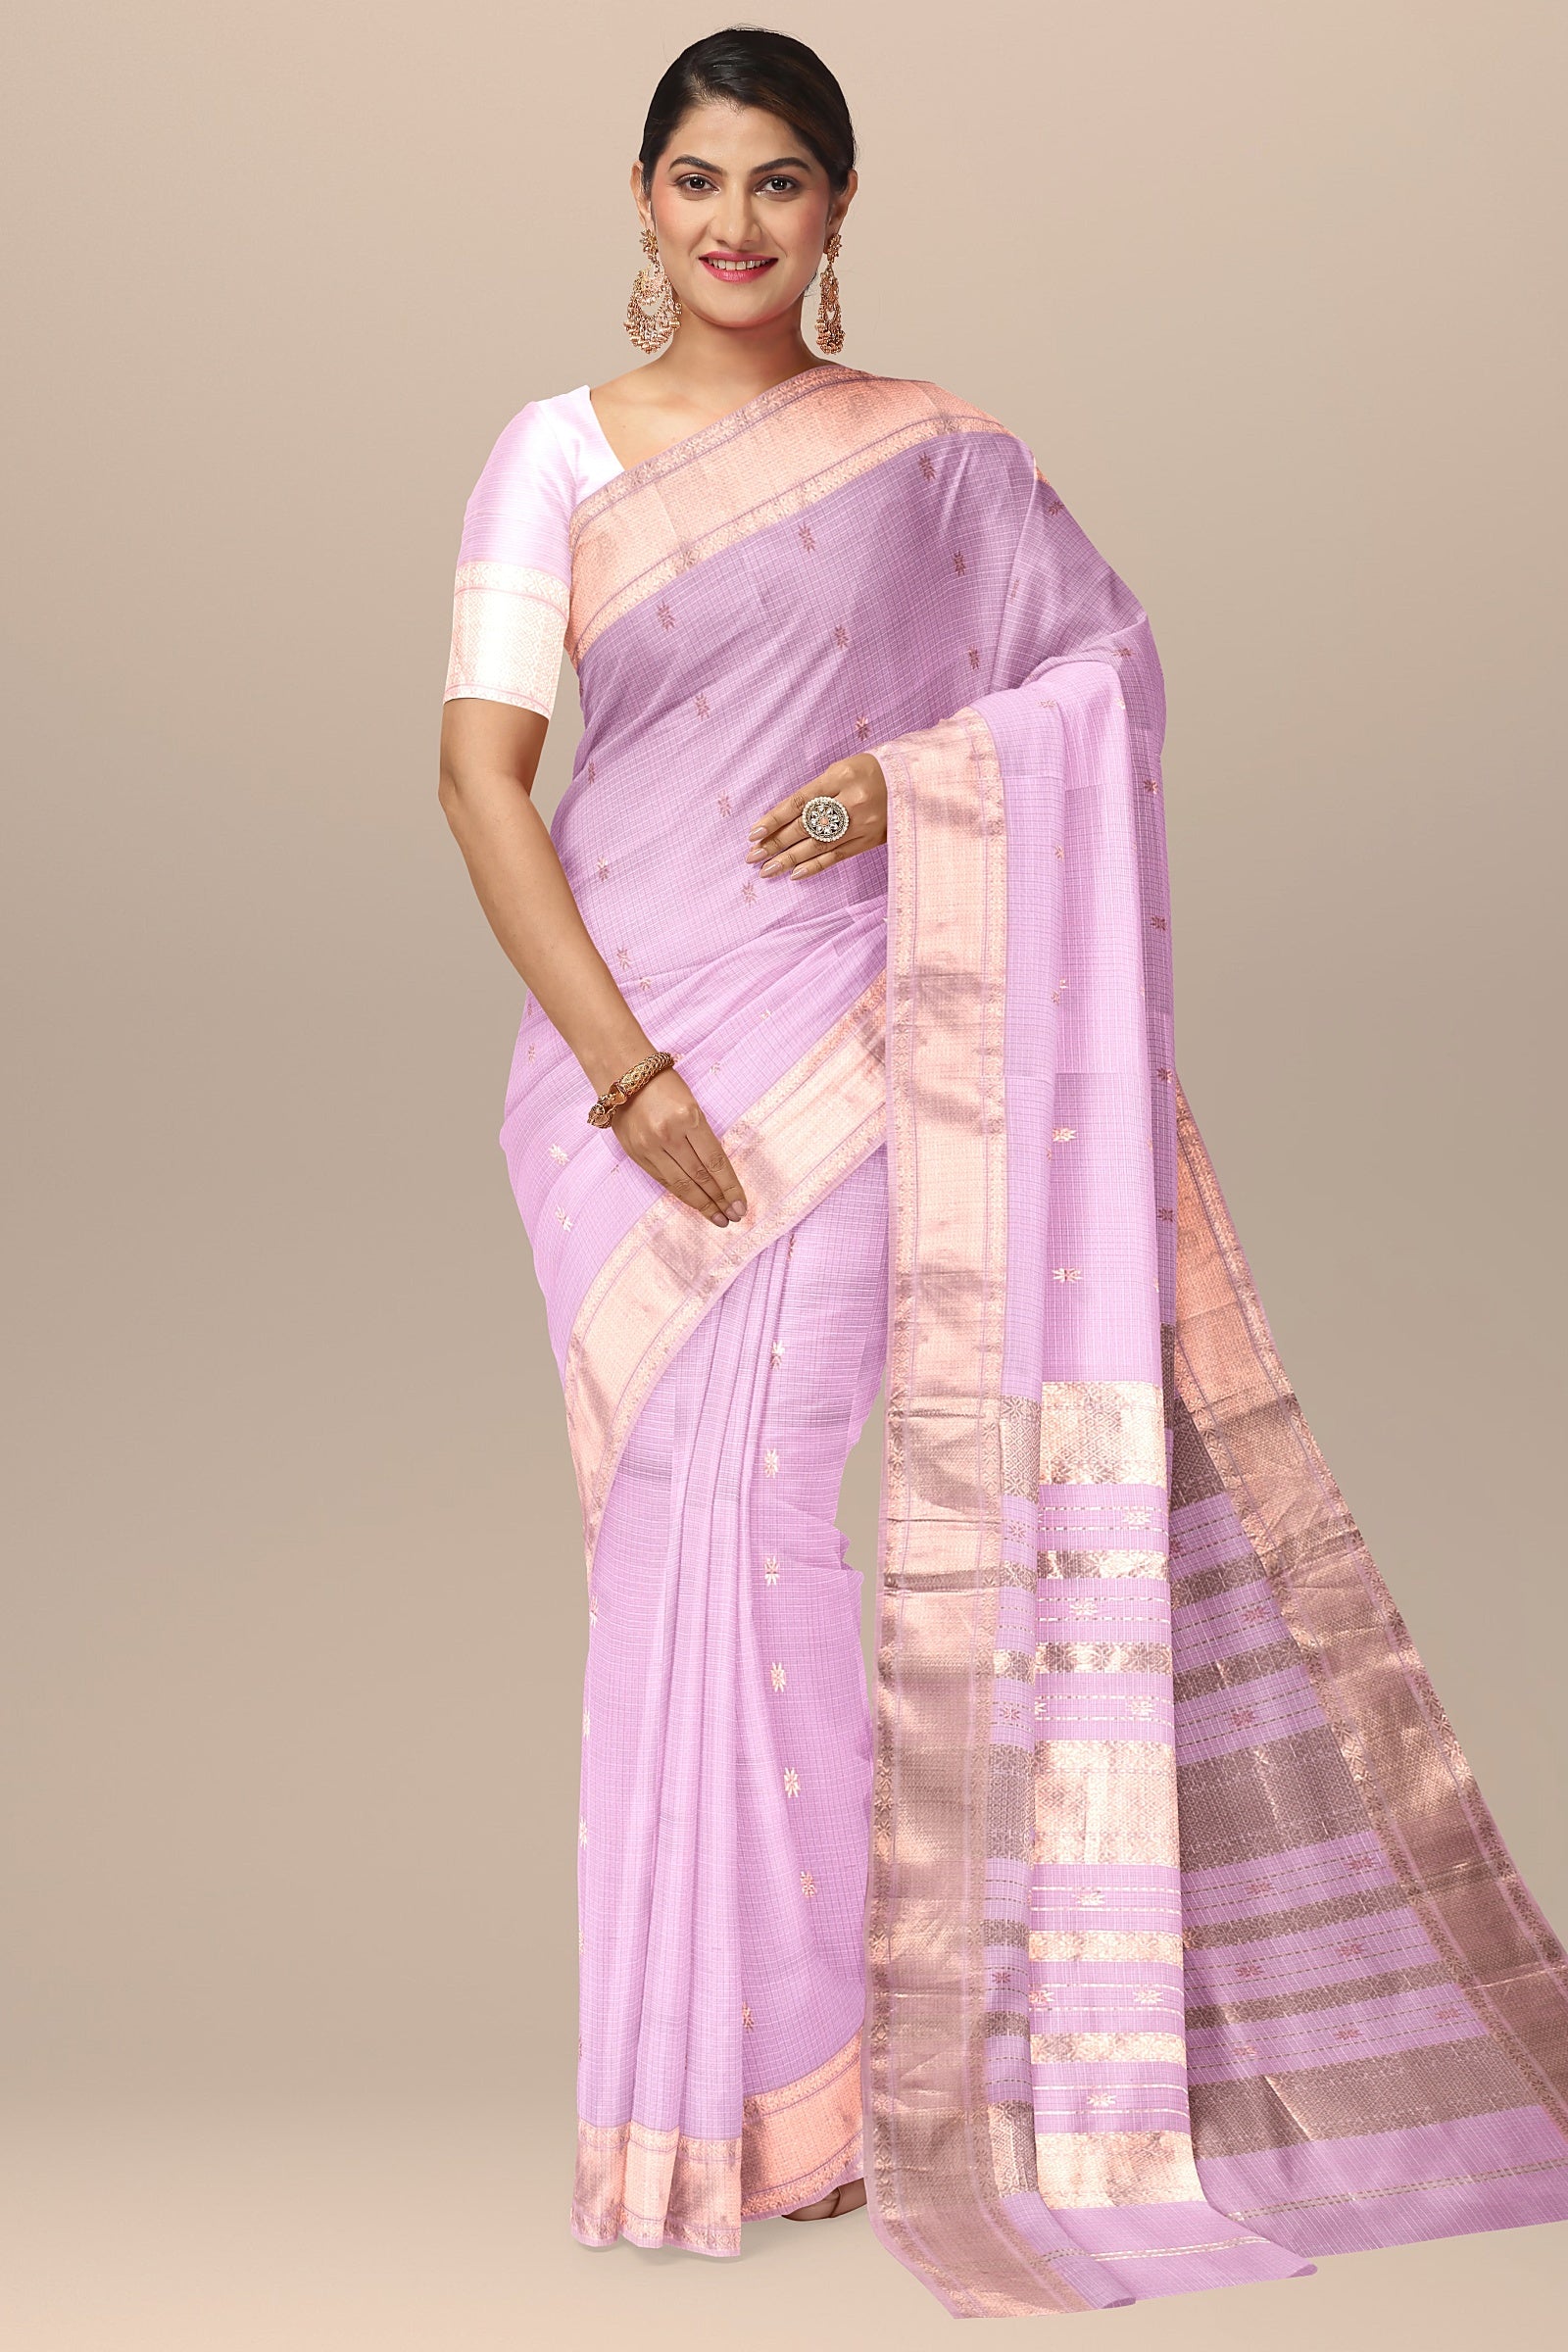 Hand Woven Light Pink Color Traditional Buti Checks Sausar Silk with Zari Border Saree SKU- BS10049 - Bhartiya Shilp